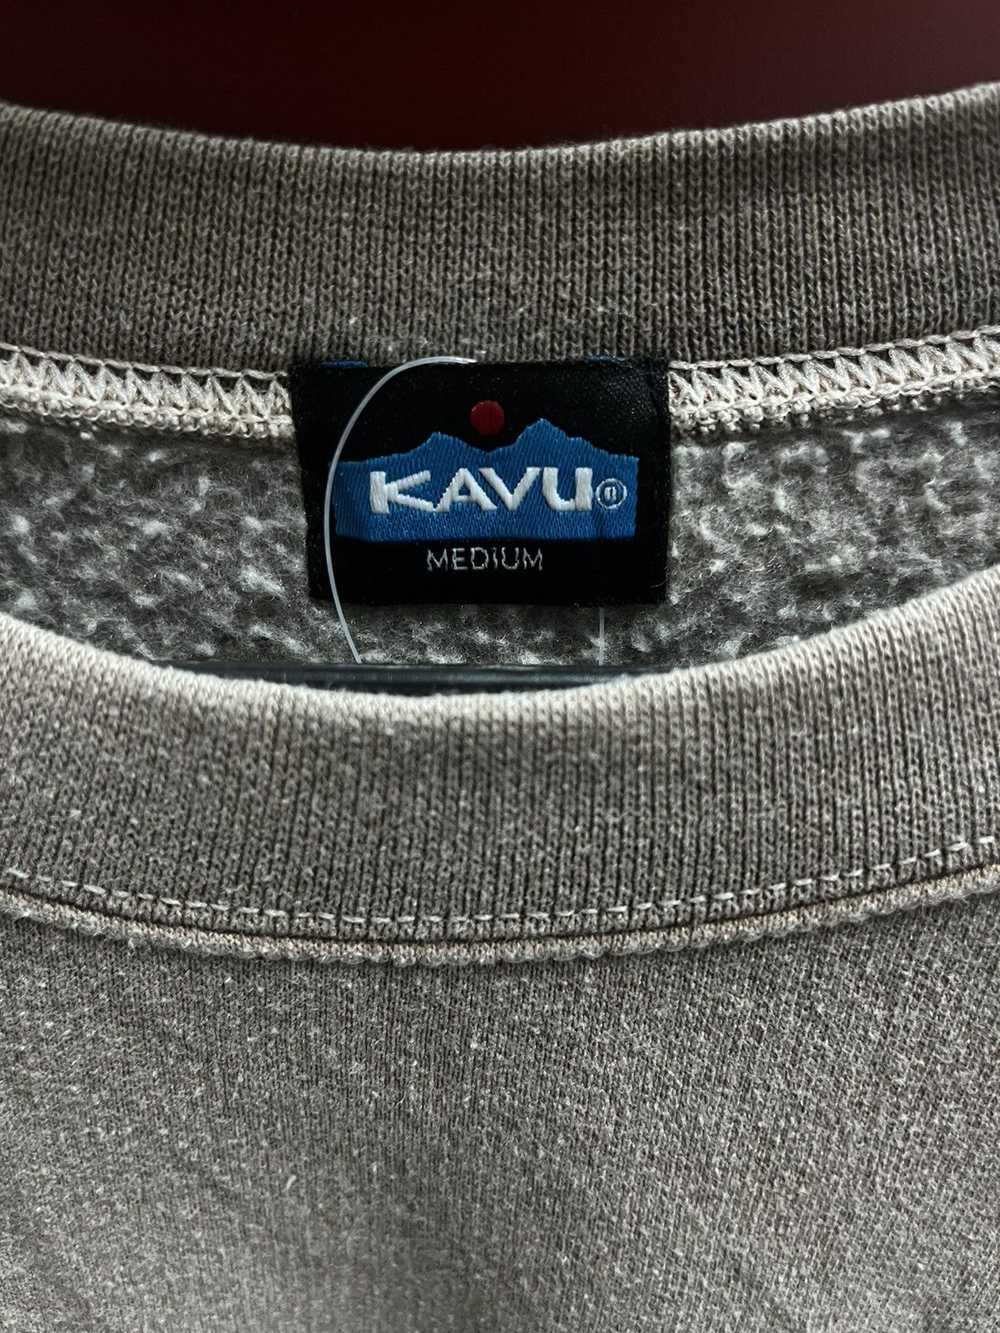 KAVU × Outdoor Life Kavu - image 3